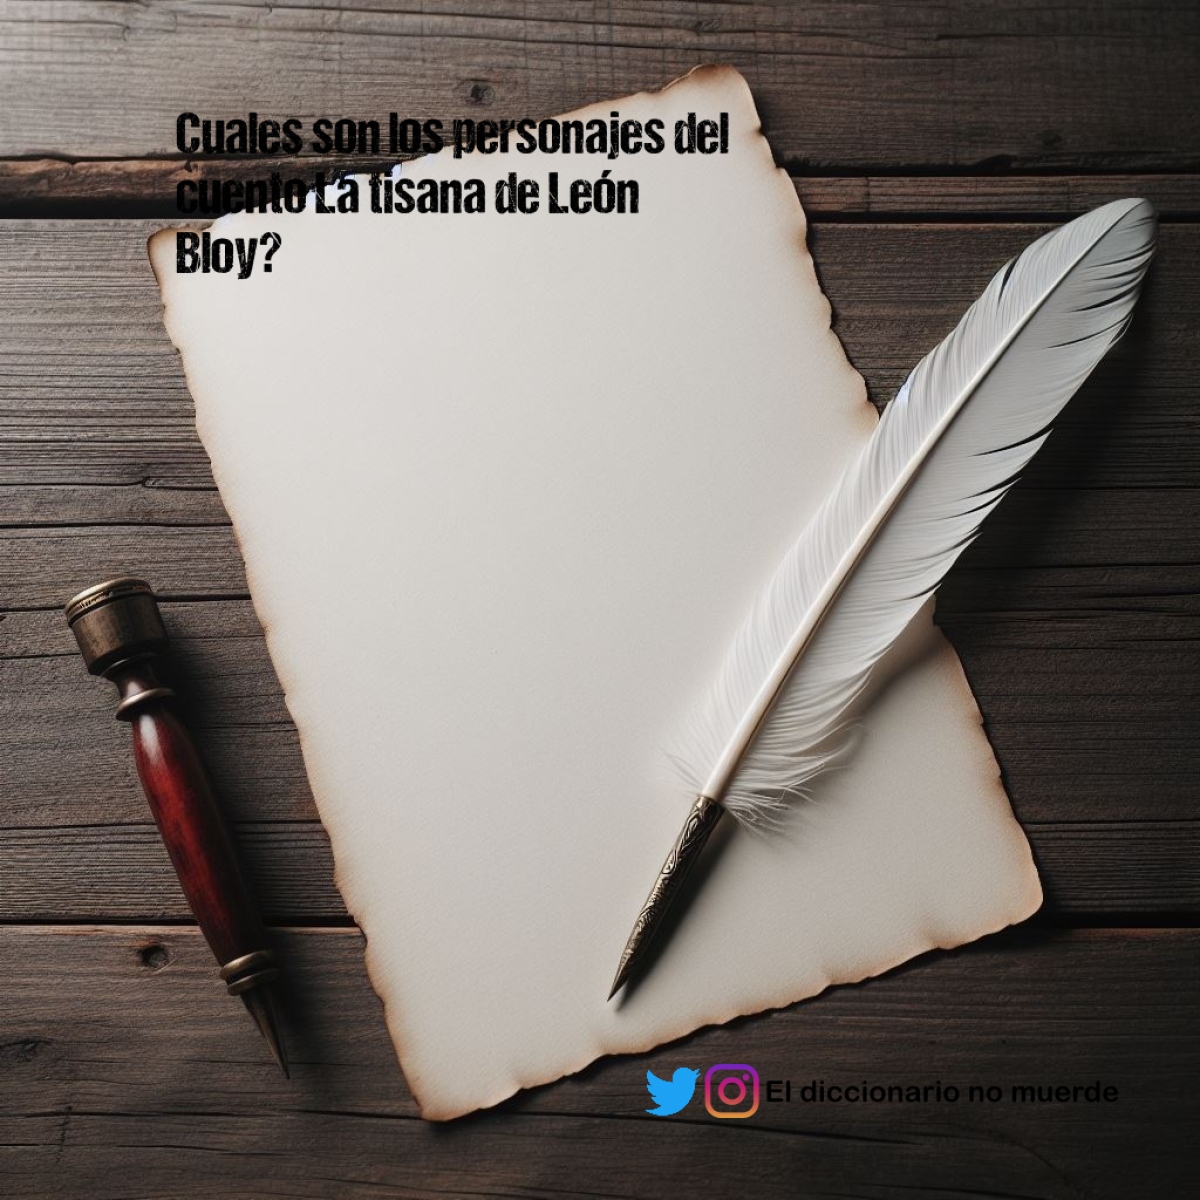 Cuales son los personajes del cuento La tisana de León Bloy?